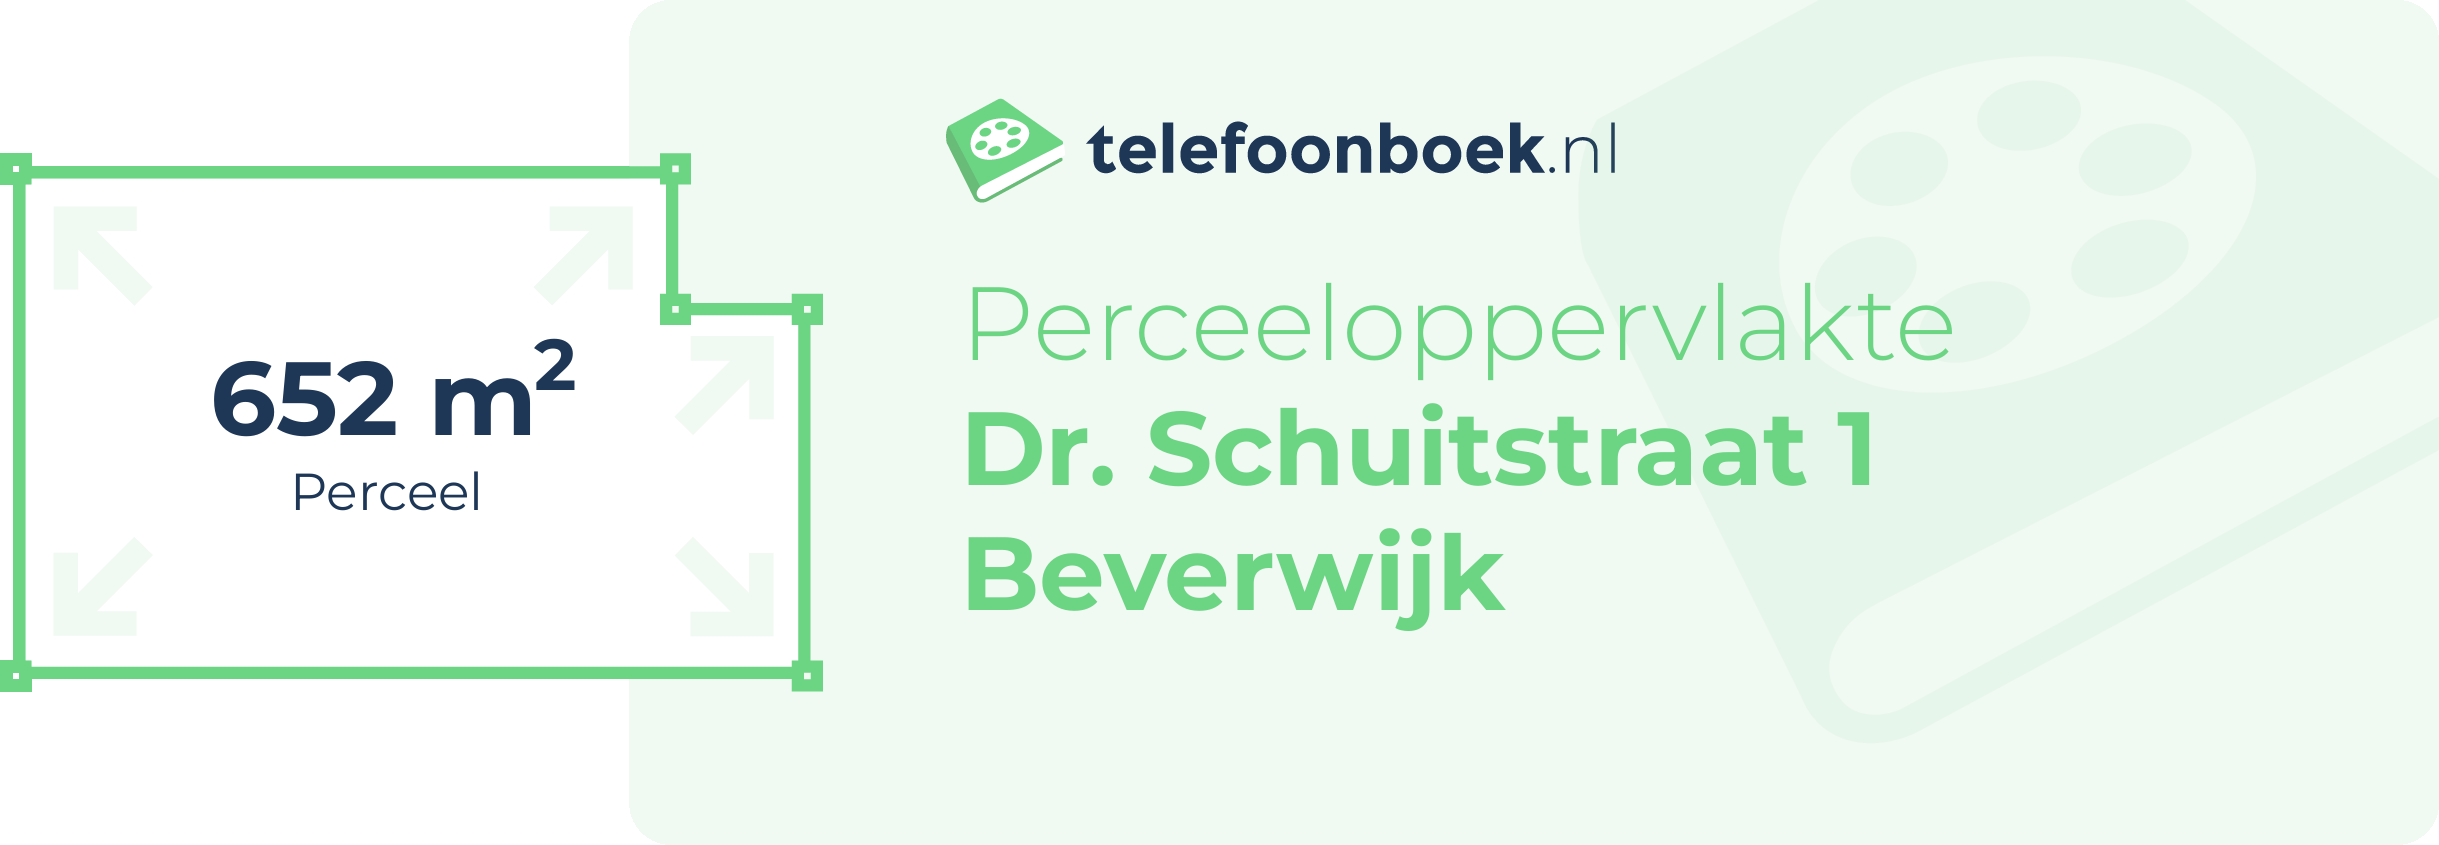 Perceeloppervlakte Dr. Schuitstraat 1 Beverwijk